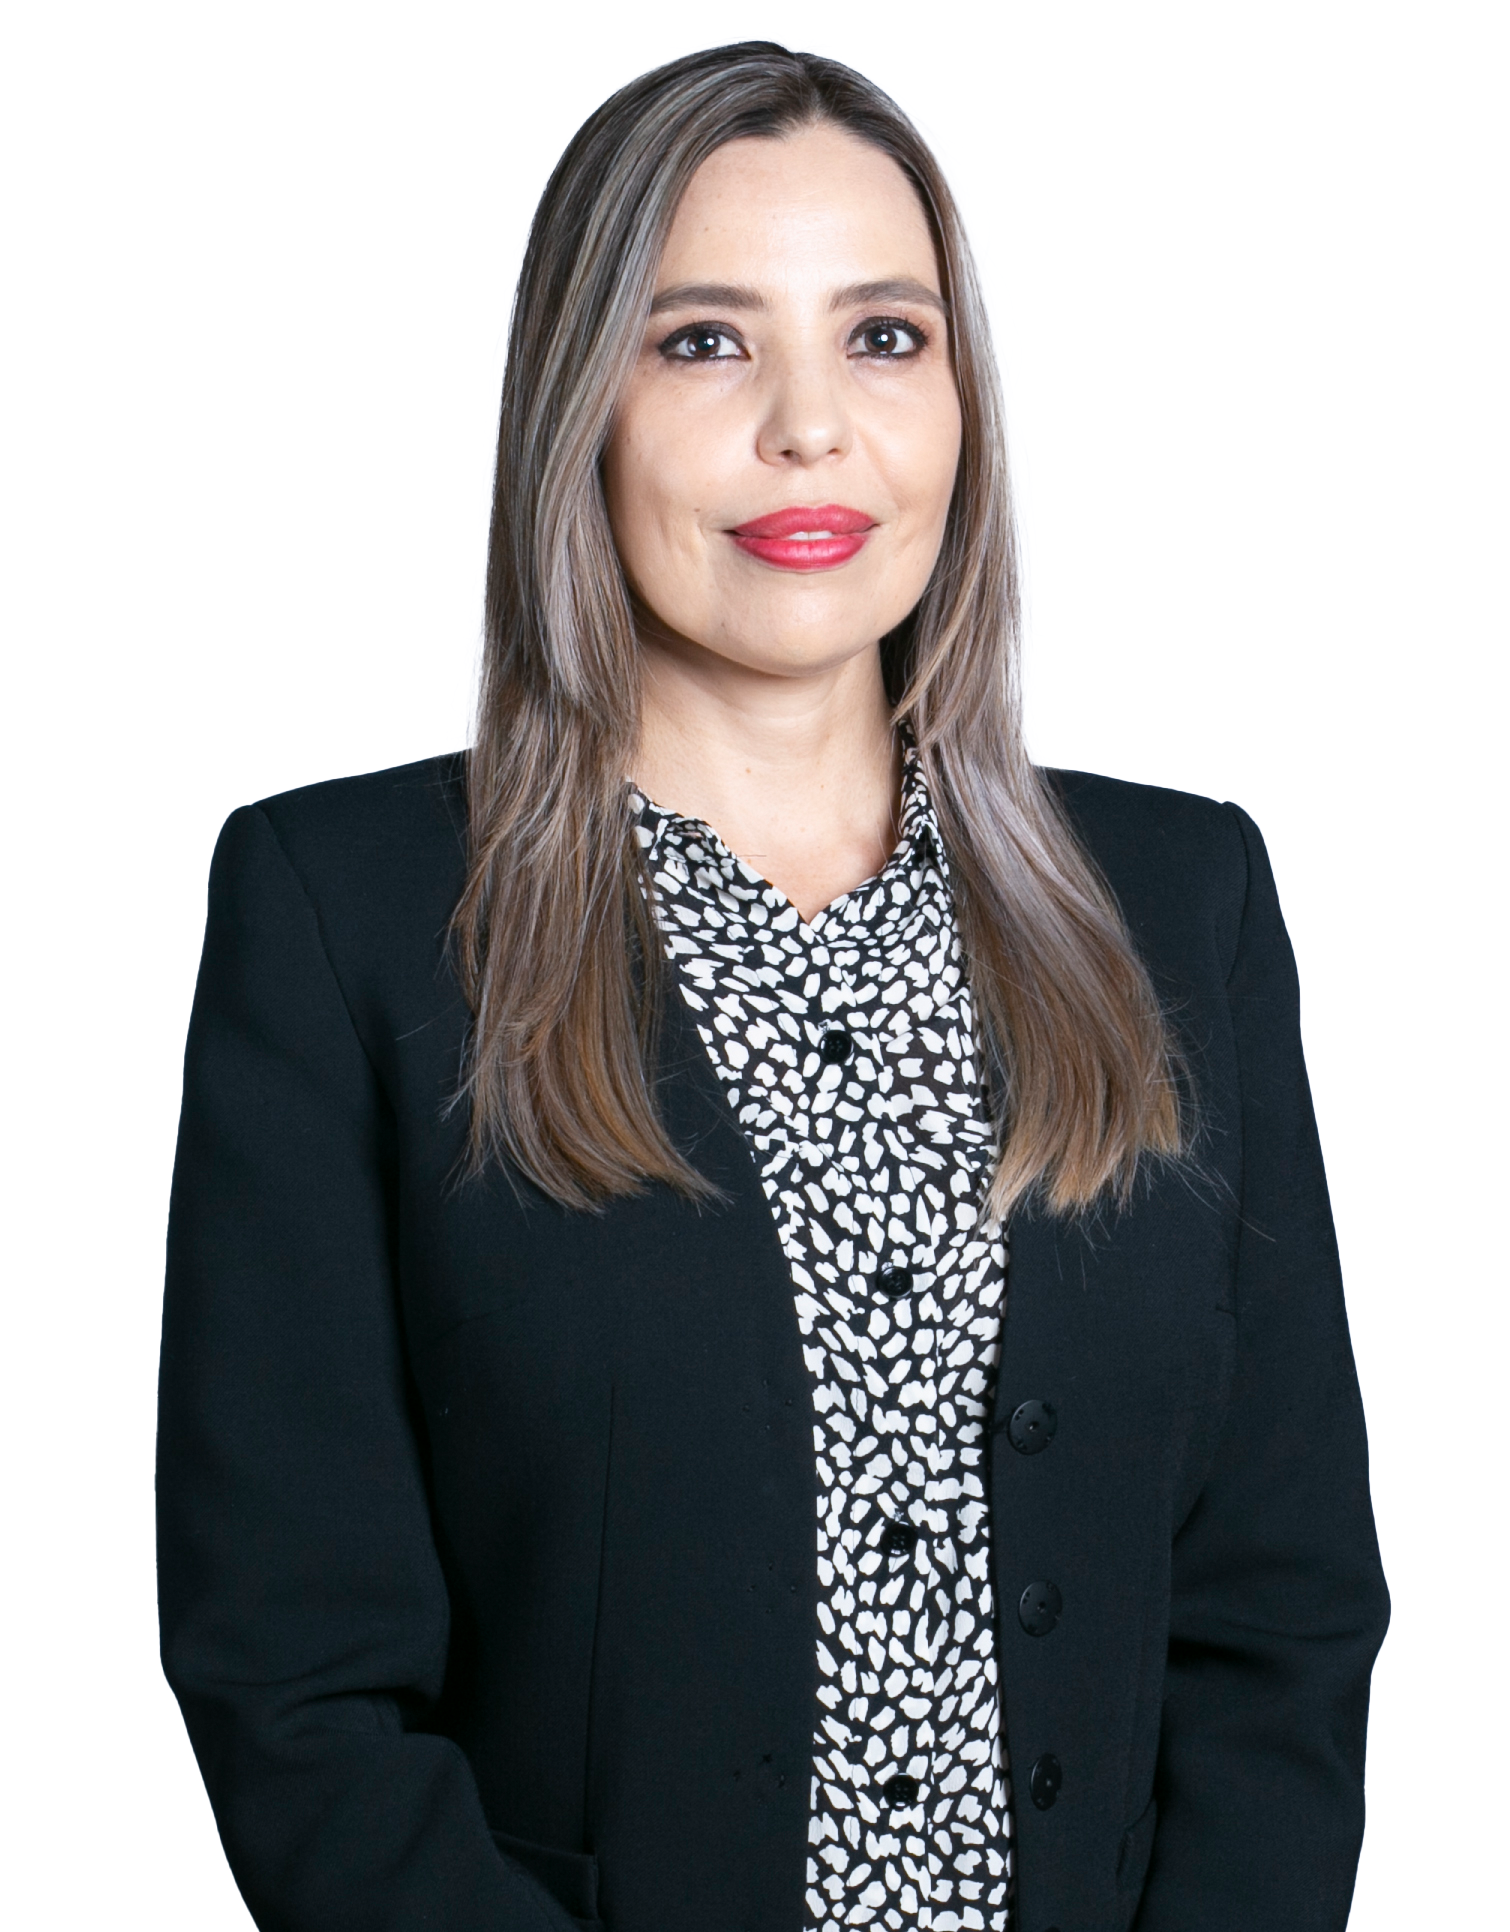 Ana Fabiola Campos Jazo